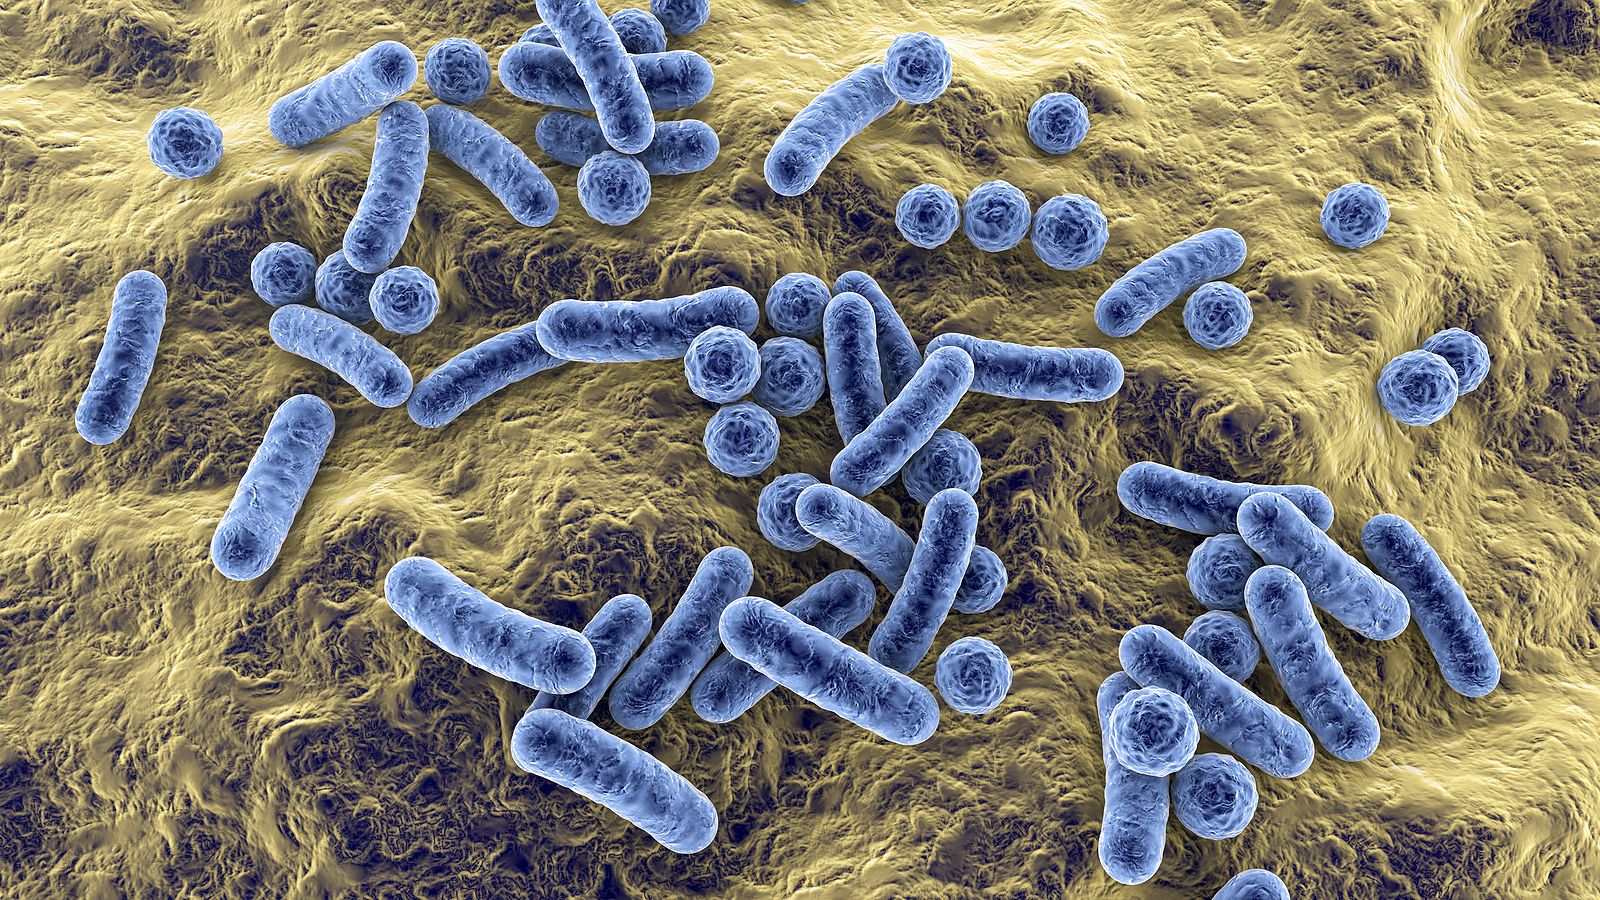 Descubren que el Covid ha modificado una bacteria multirresistente que causa neumonía y sepsis